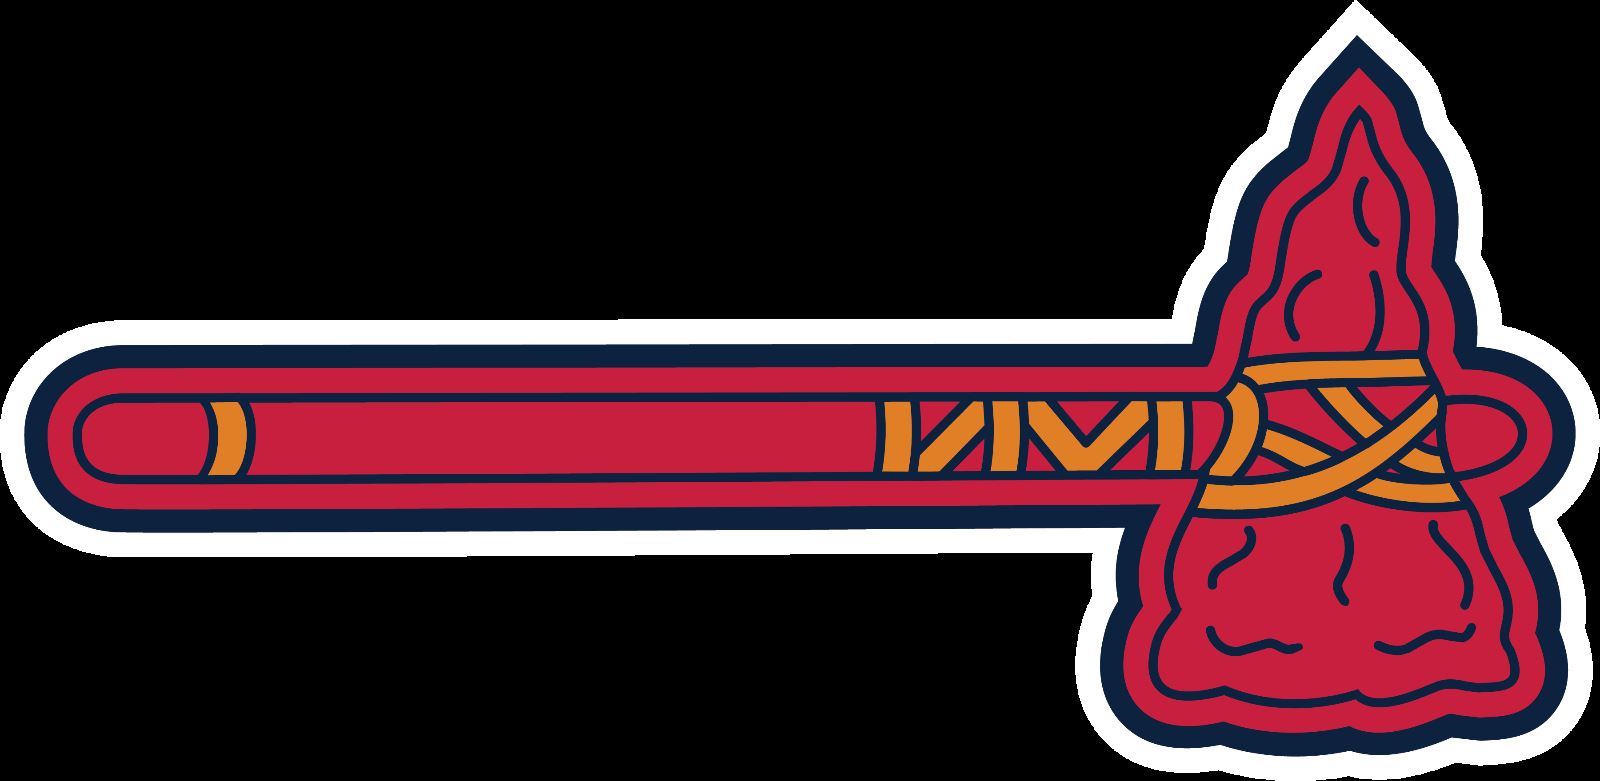 Atlanta Braves Tomahawk logo T shirt